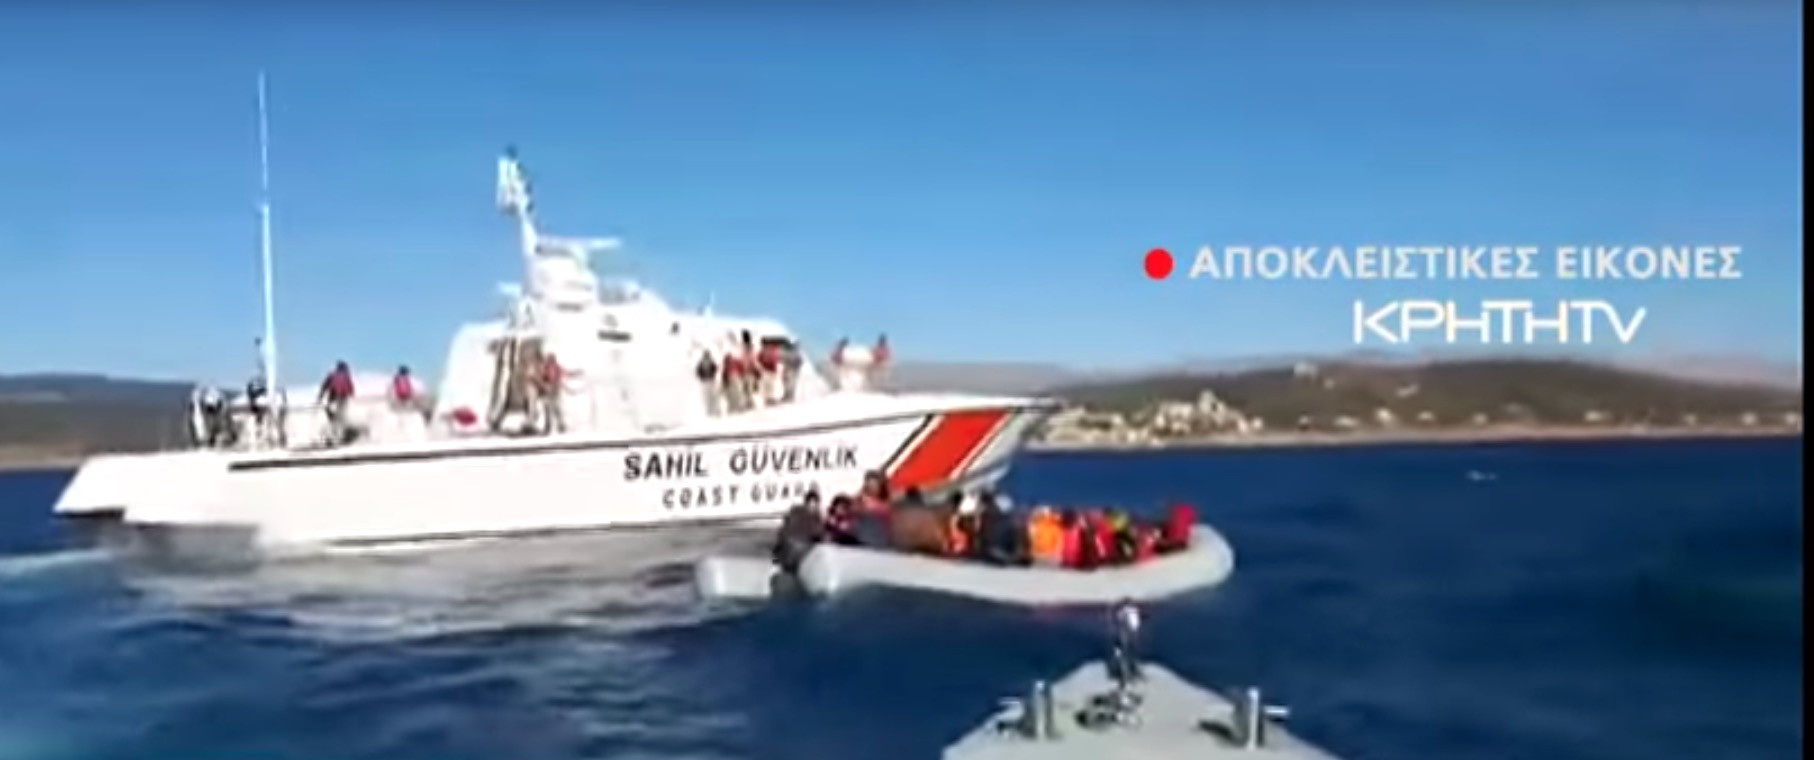 Βίντεο με το περιστατικό με την τουρκική ακταιωρό έξω από την Χίο